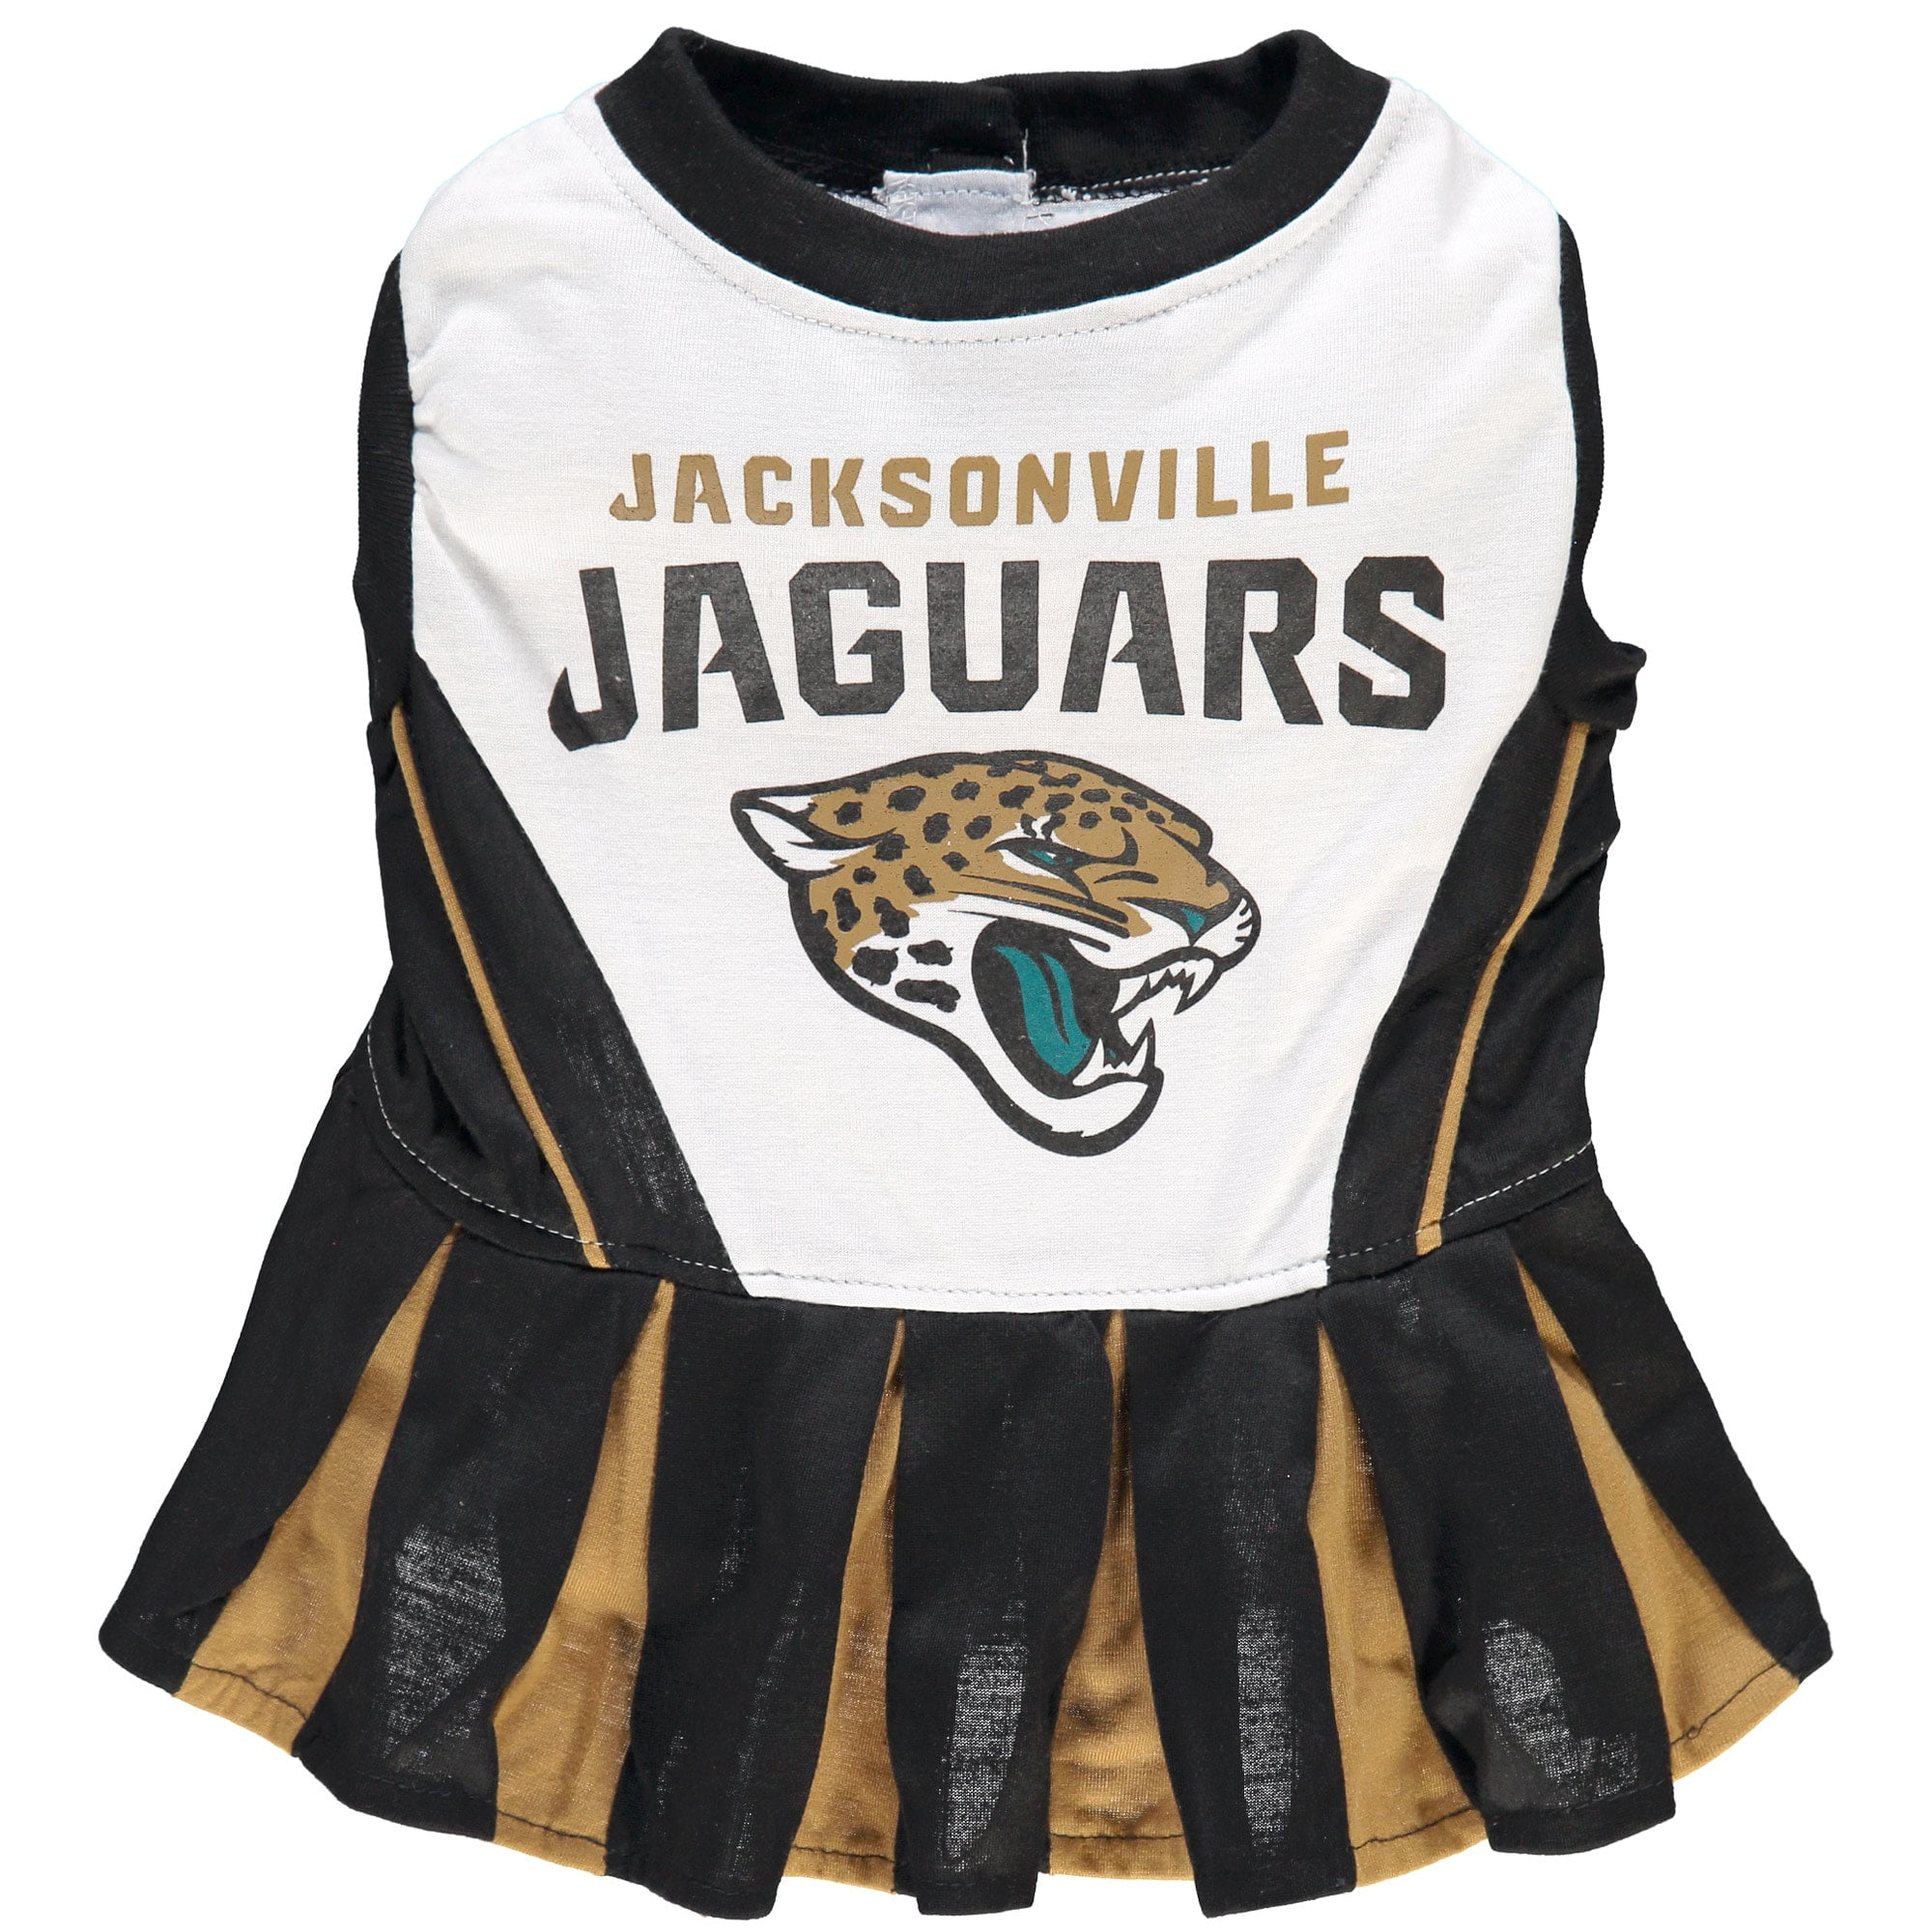 jacksonville jaguars dog jersey